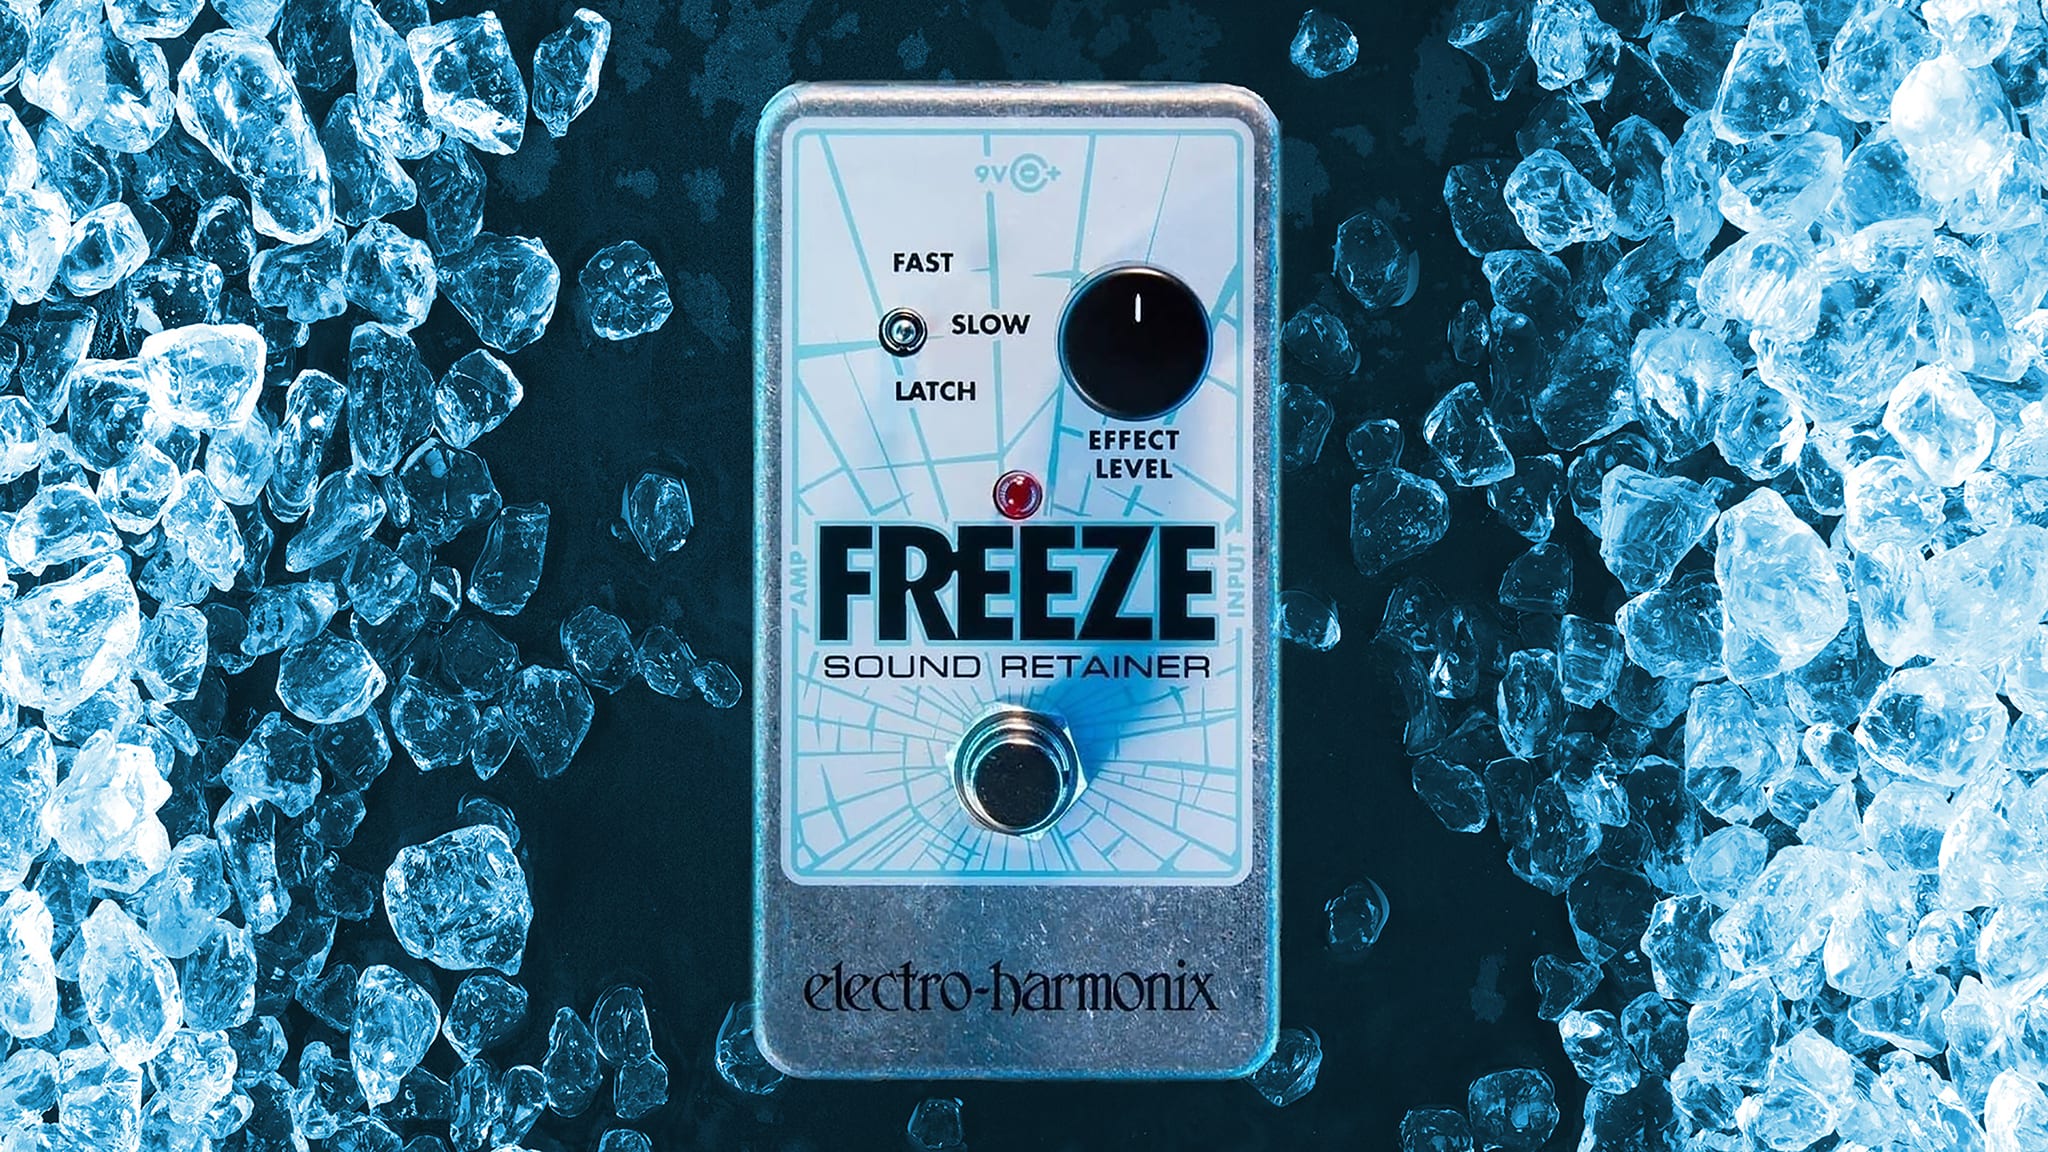 Freeze | Sound Retainer - Electro-Harmonix